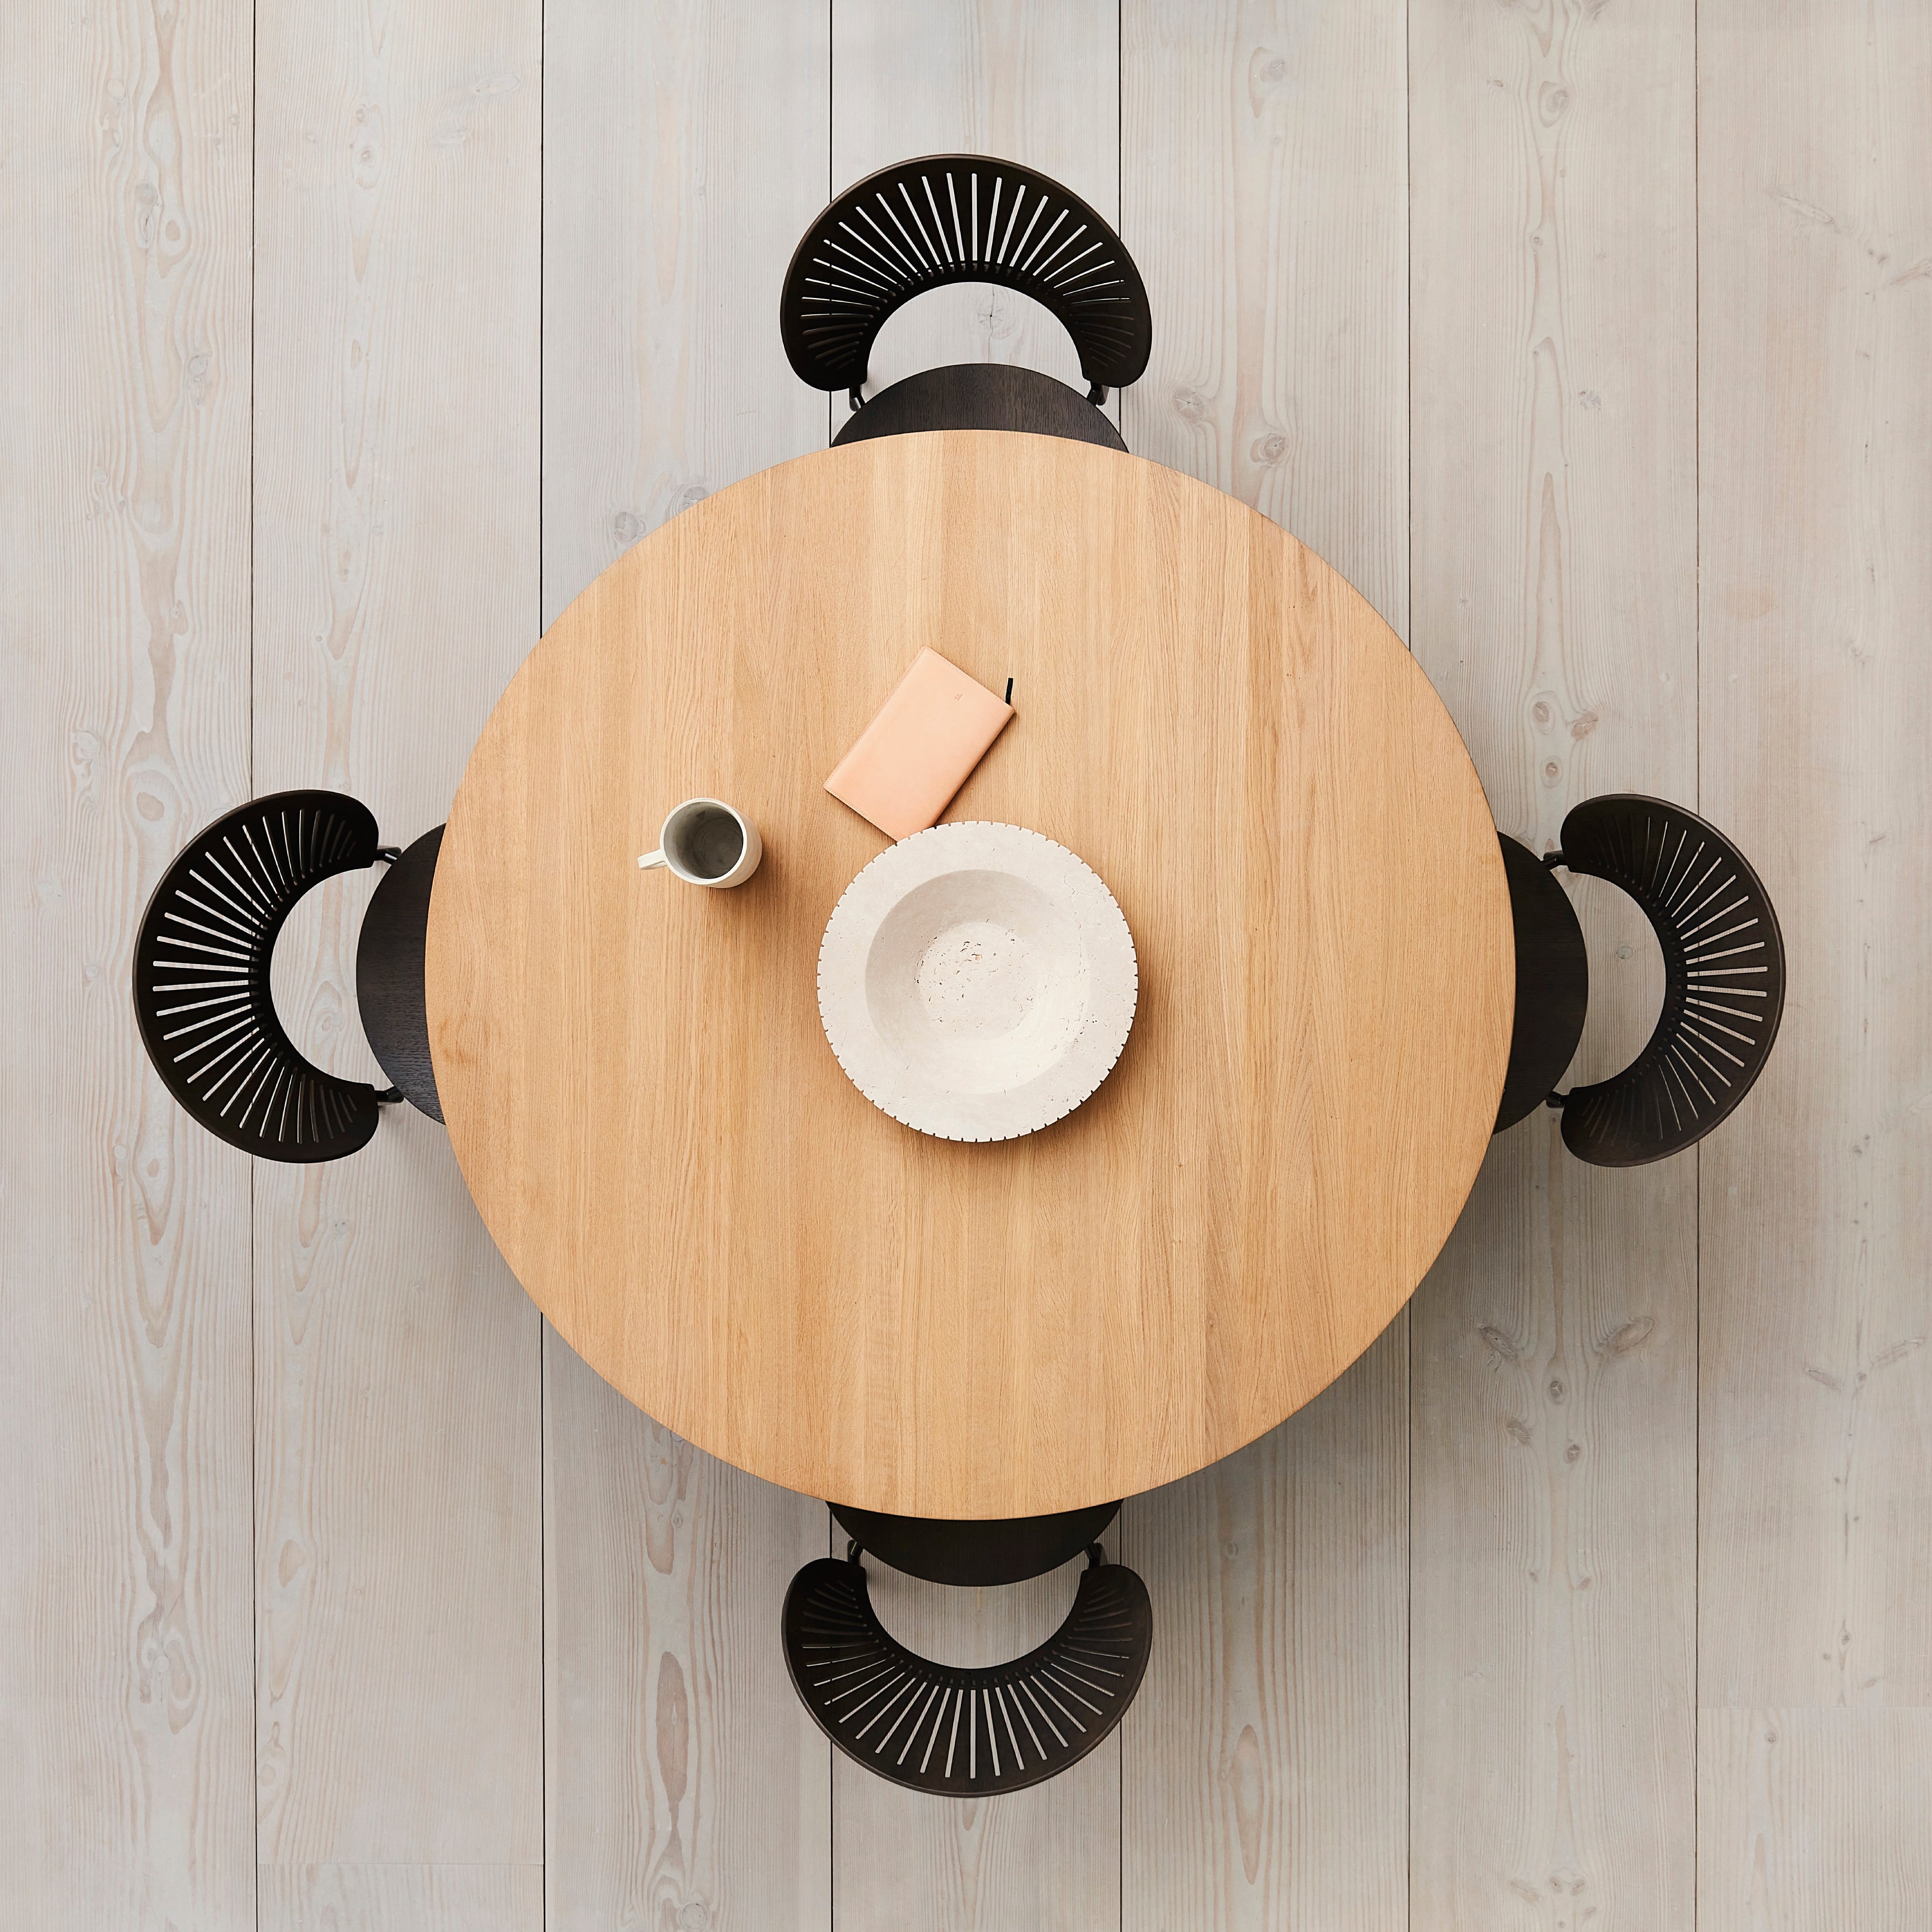 Taro Dining Table: Round